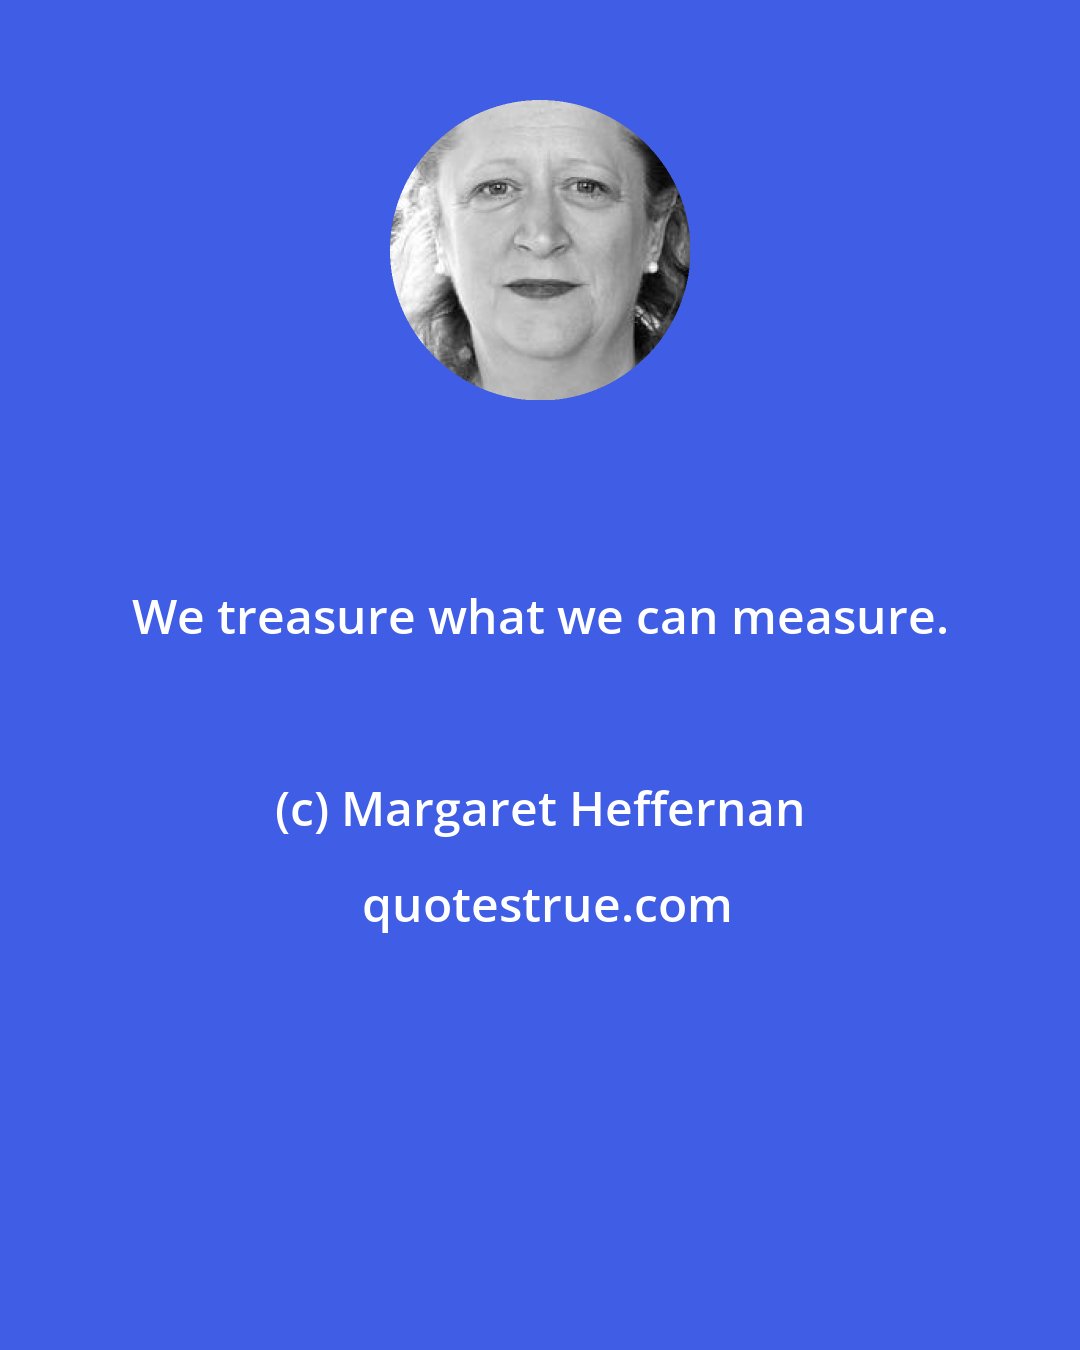 Margaret Heffernan: We treasure what we can measure.